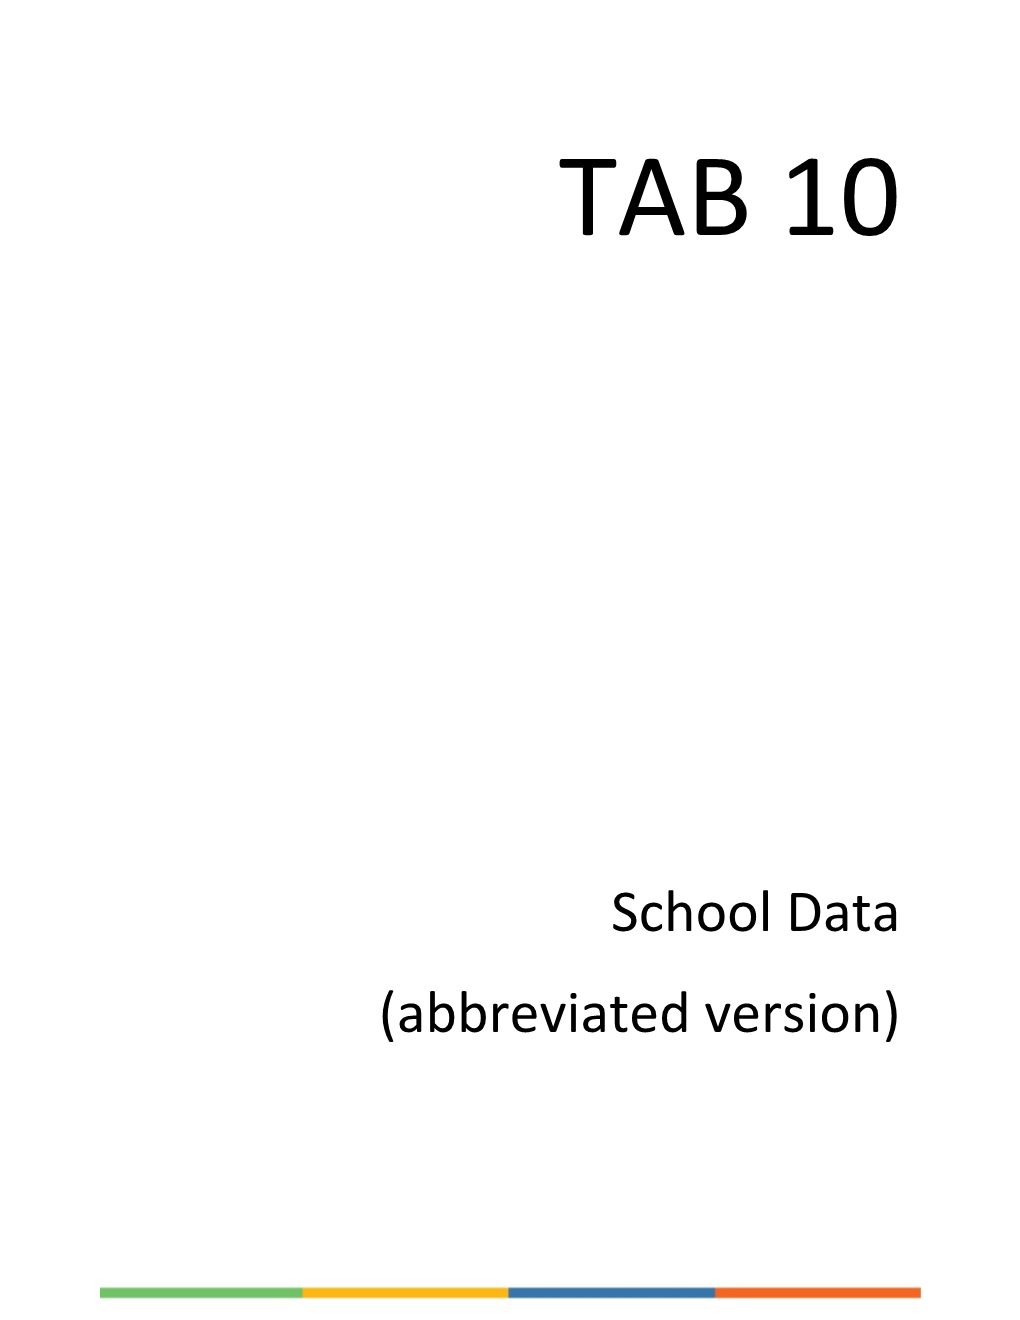 School Data (Abbreviated Version)